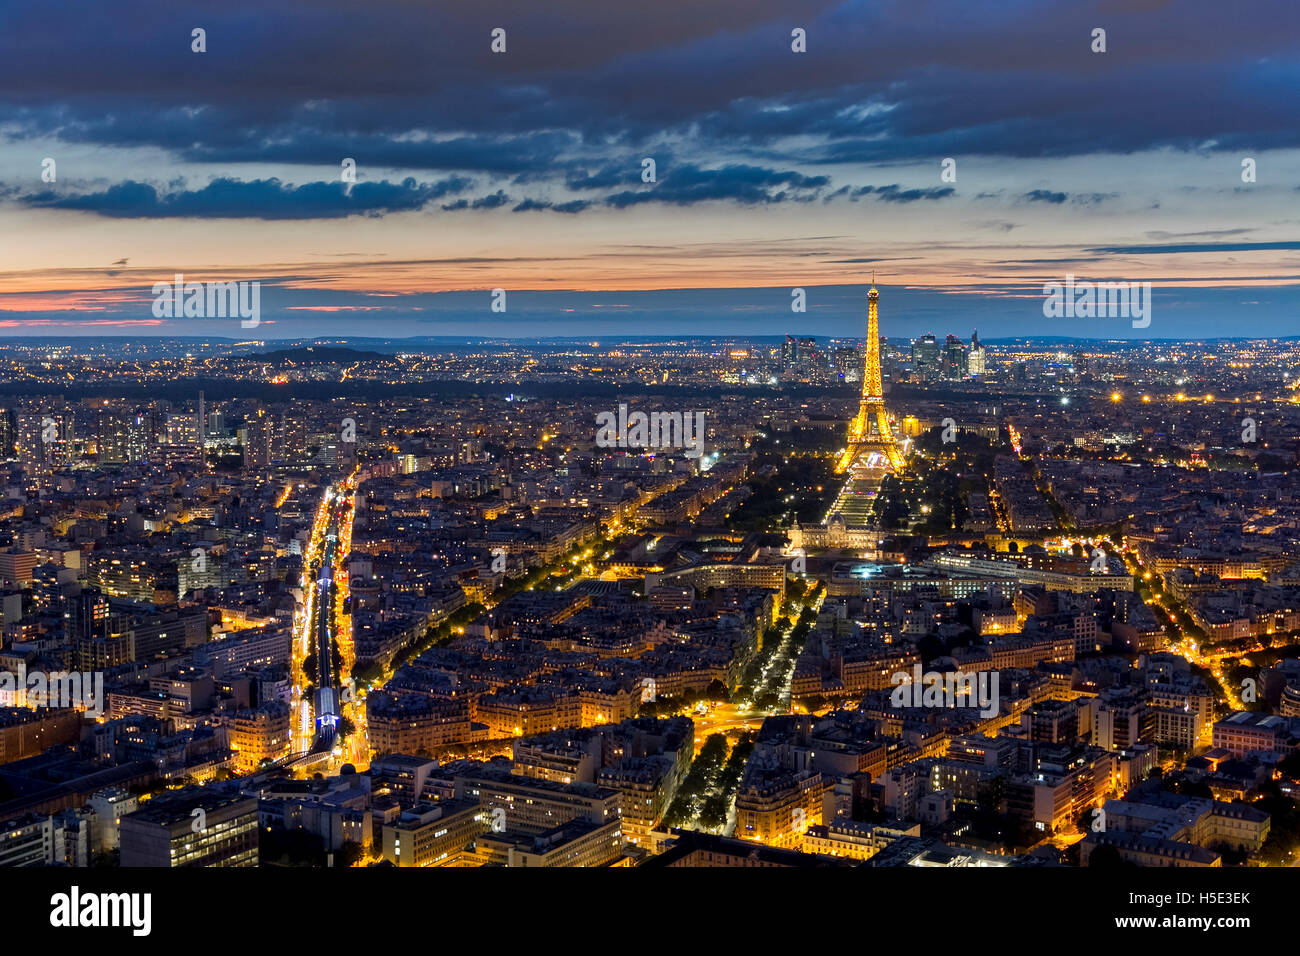 París, Francia - 28 de agosto: Vista aérea de la torre Eiffel iluminada por la noche, el 28 de agosto de 2015 en París, Francia Foto de stock